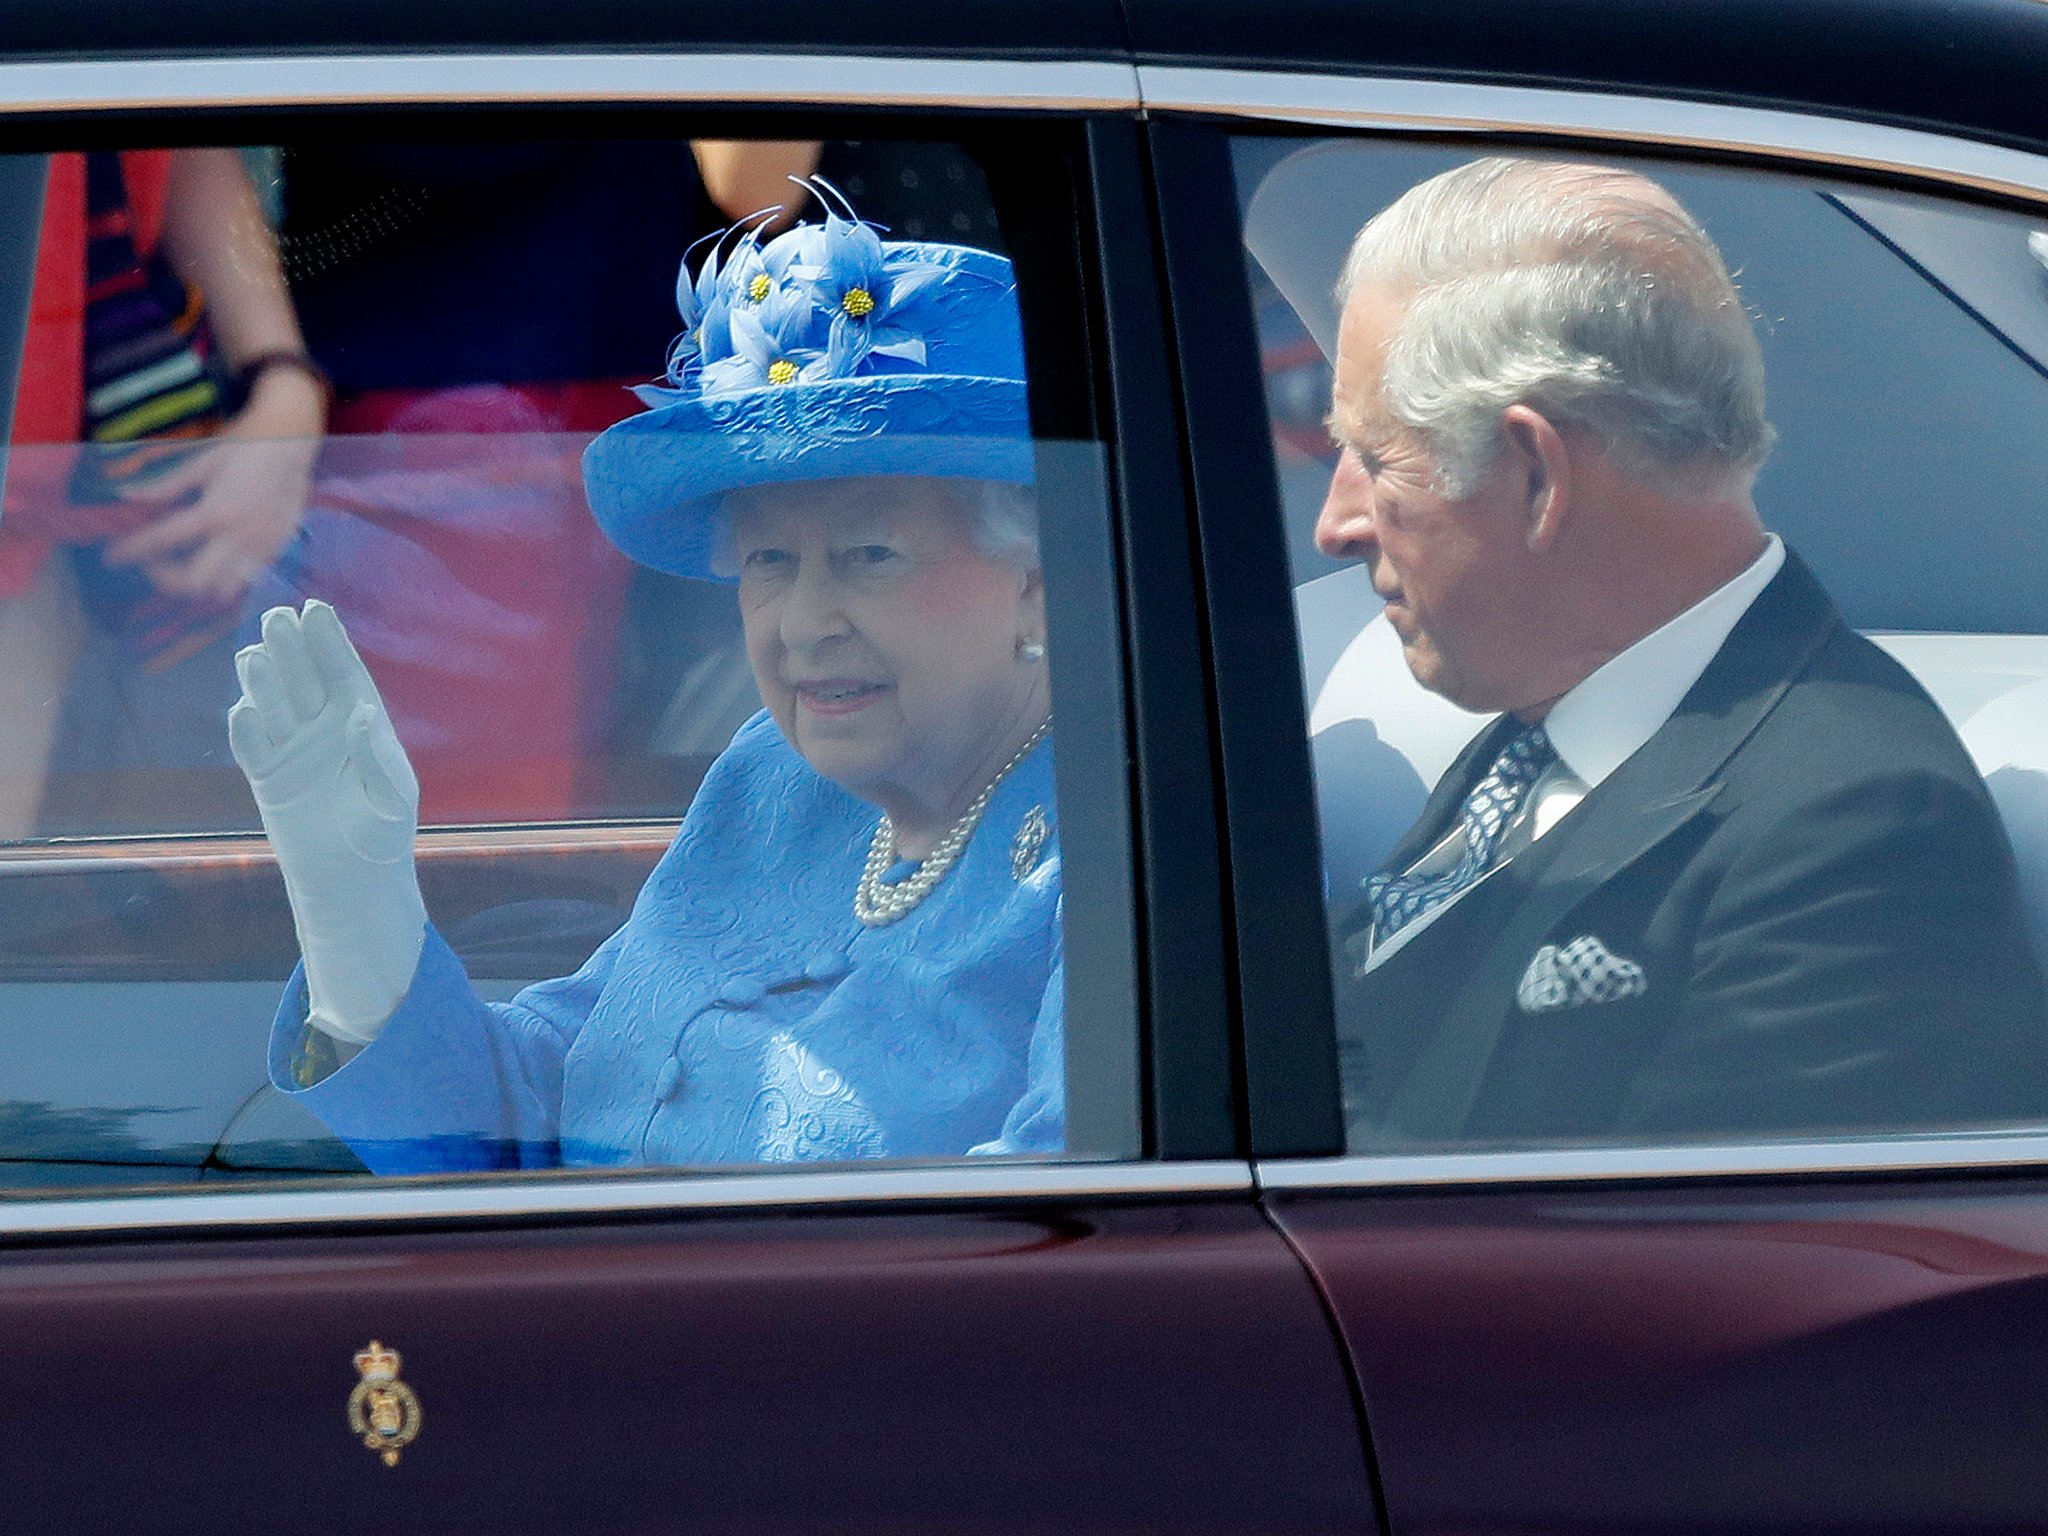 Pourquoi la famille royale britannique ne met parfois pas de ceinture de sécurité ? Nous avons la réponse !